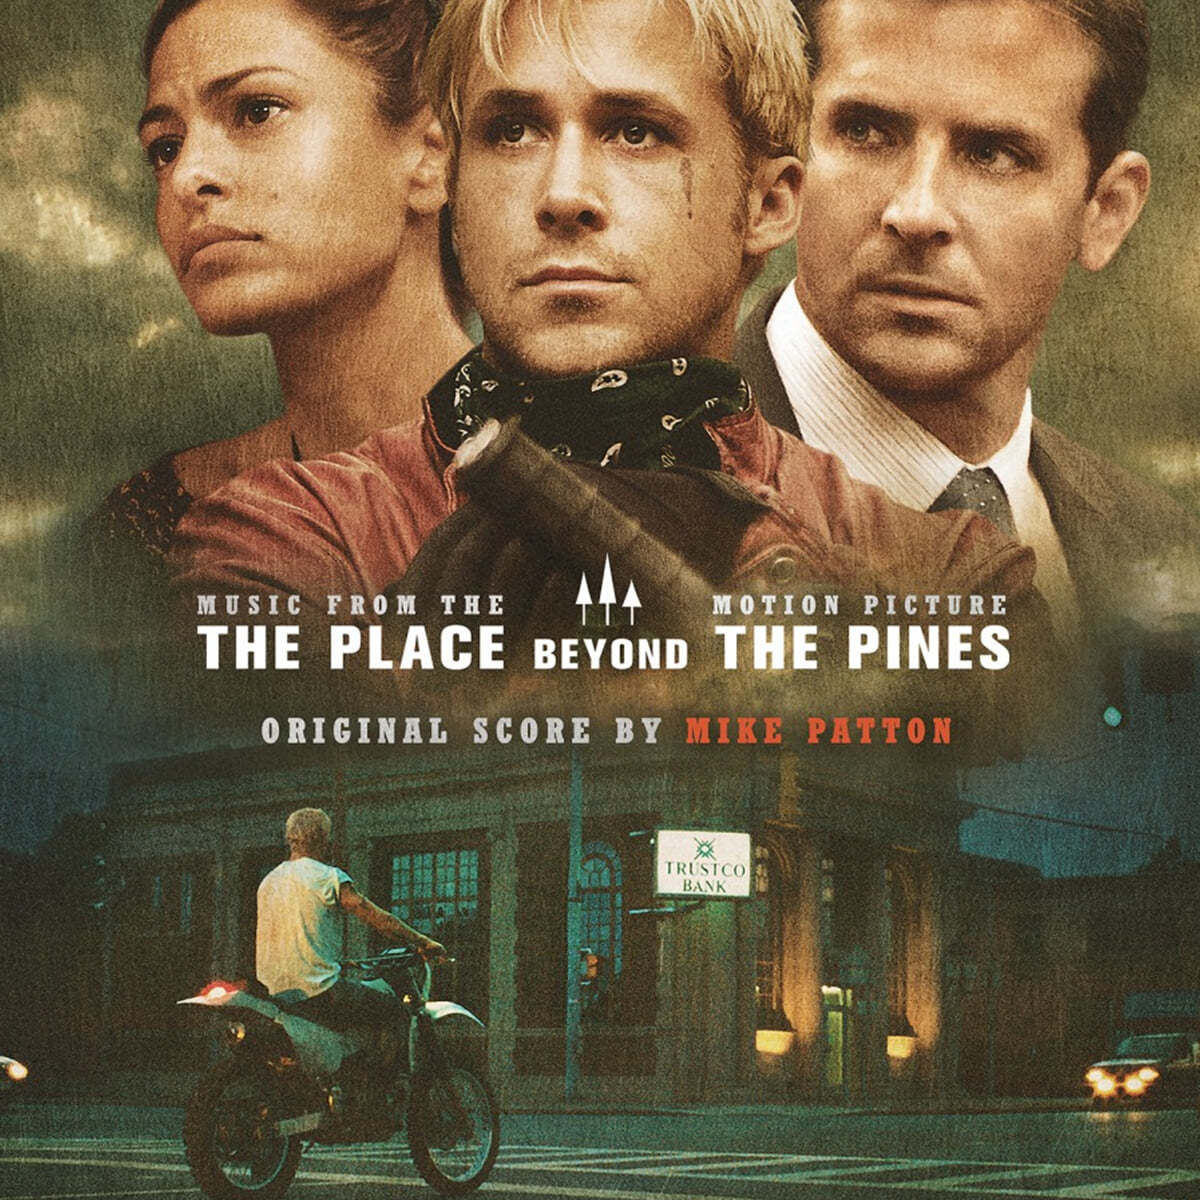 플레이스 비욘드 더 파인즈 영화음악 (The Place Beyond the Pines OST by Mike Patton) [불투명 그린 컬러 LP] 